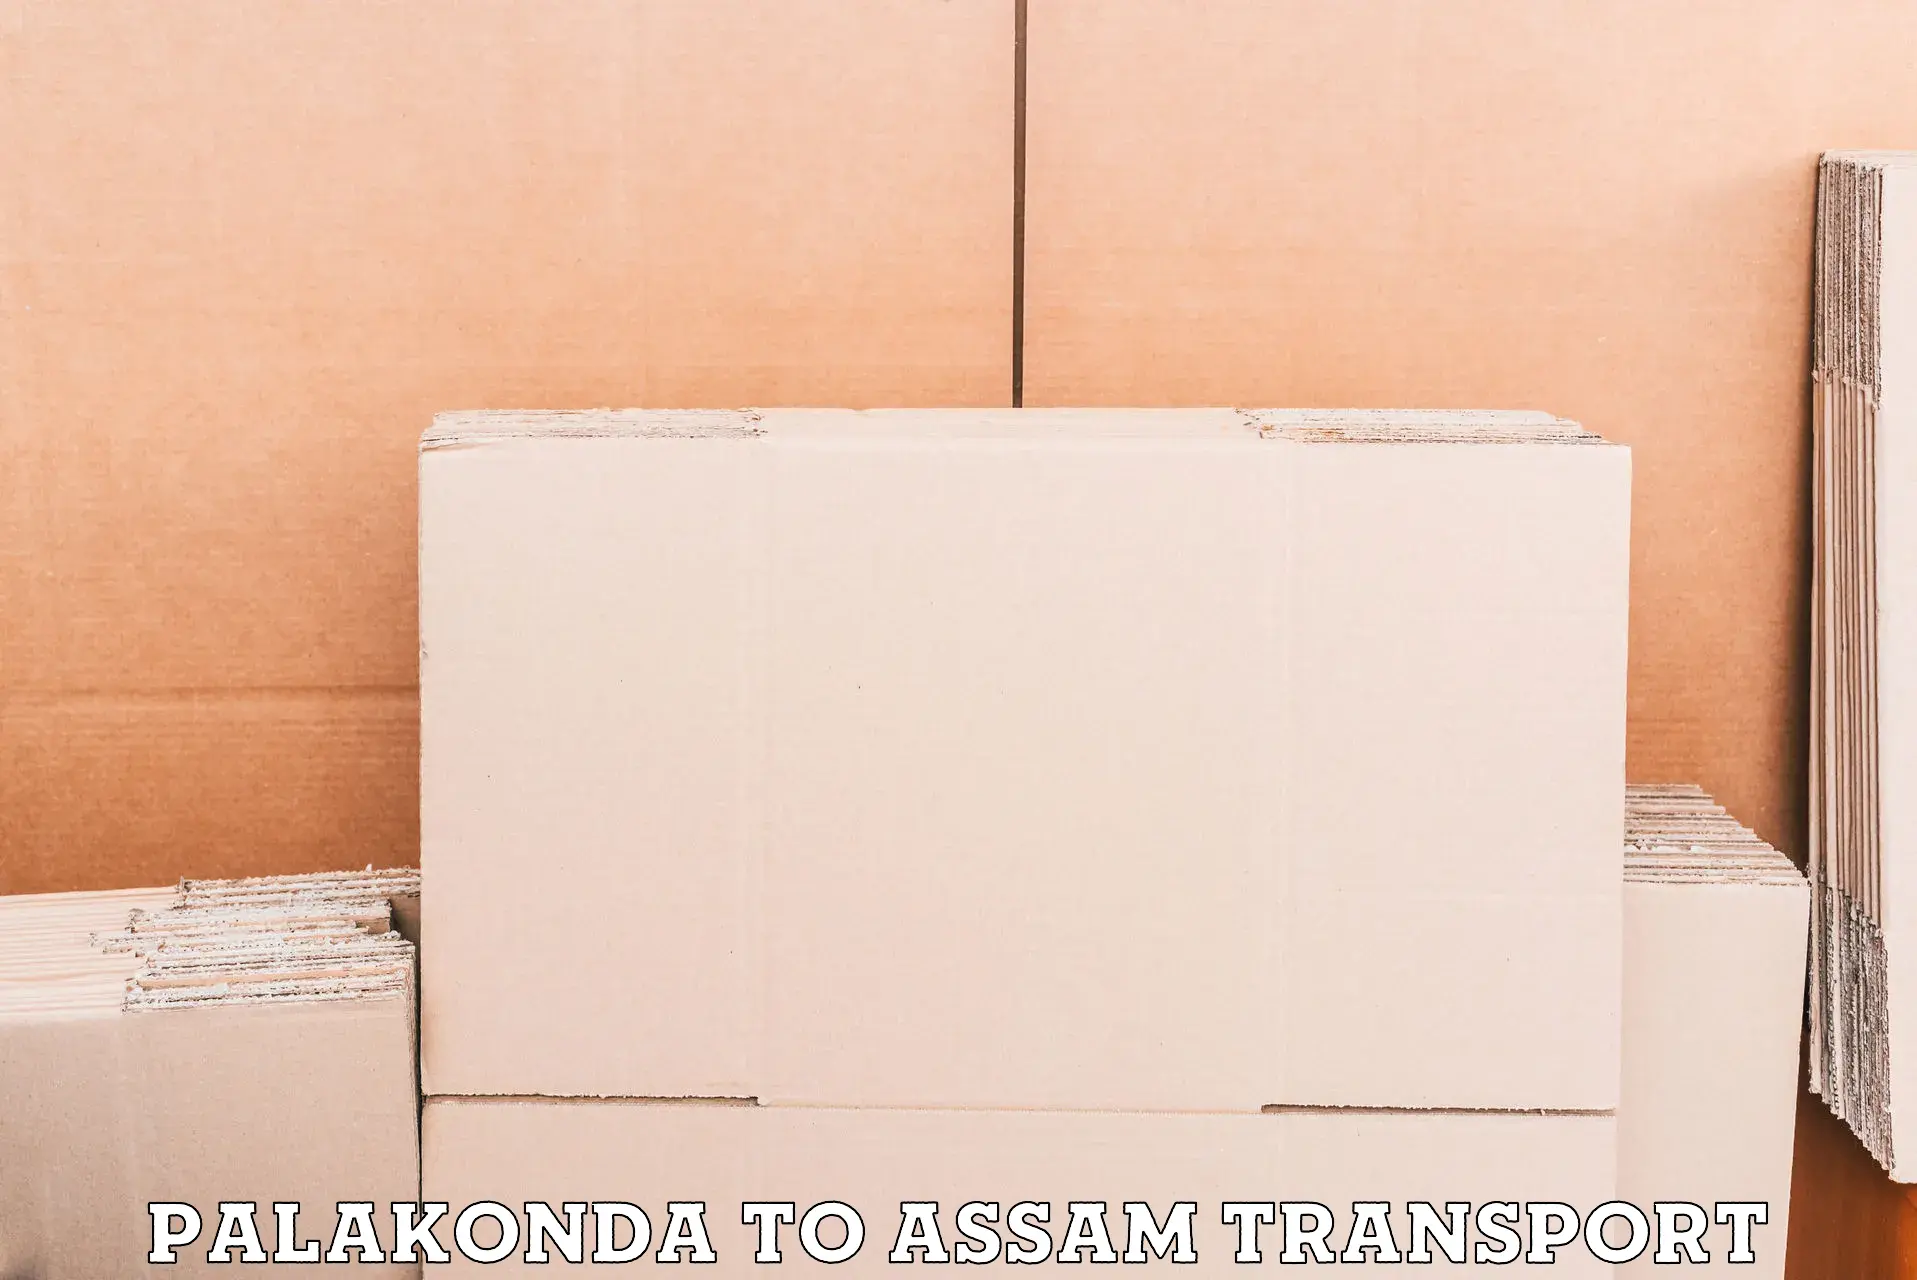 Bike shipping service Palakonda to Lala Assam